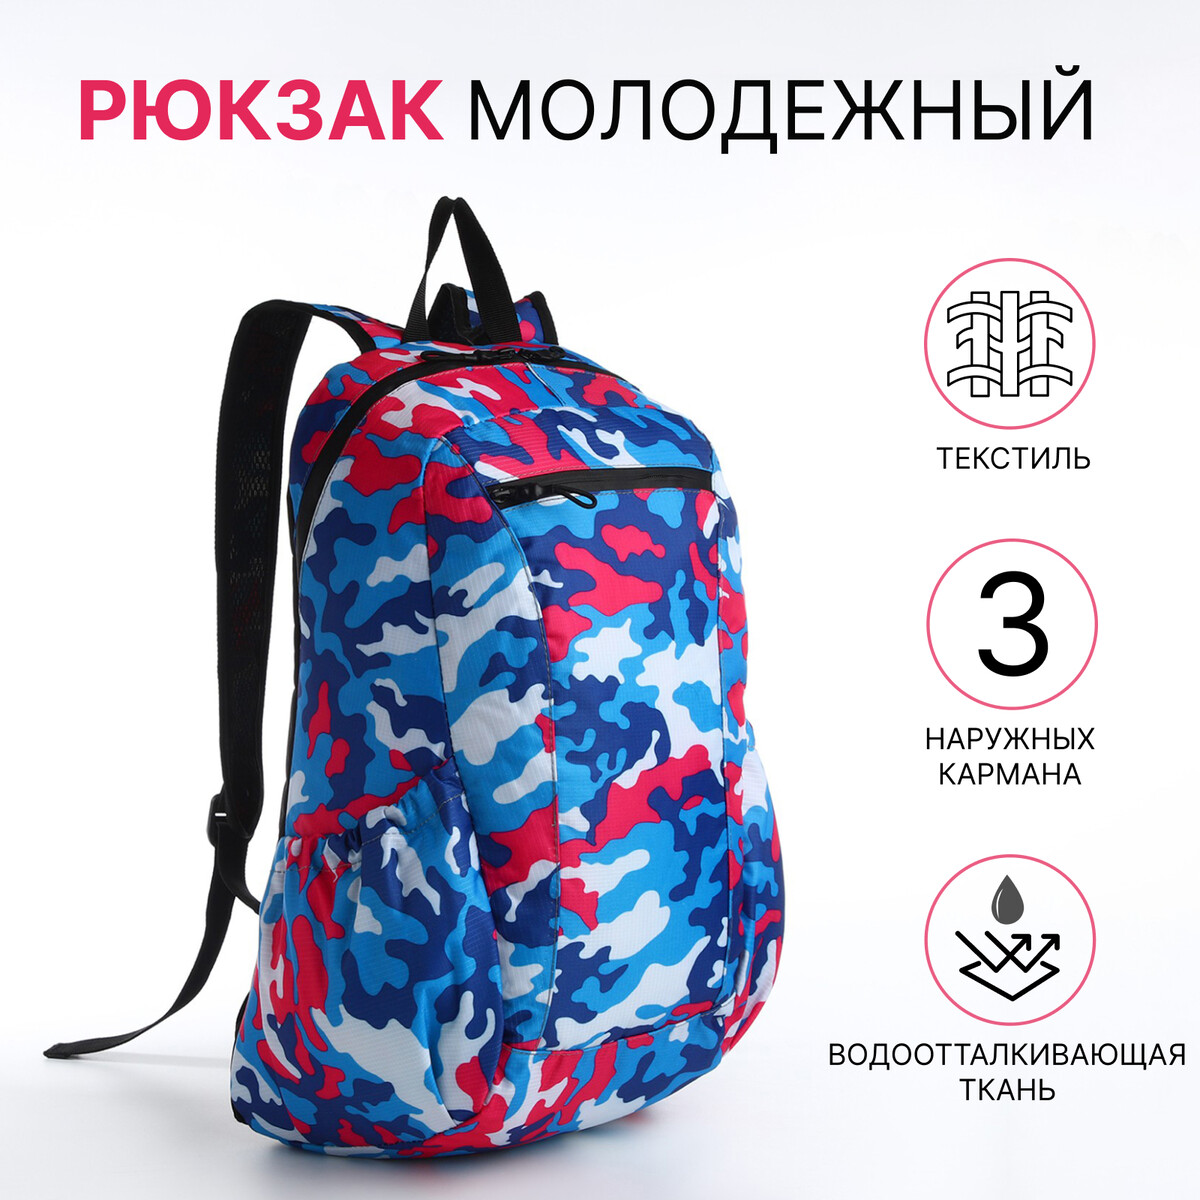 Рюкзак молодежный, водонепроницаемый на молнии, 3 кармана, цвет голубой/розовый гермомешок рюкзак salvimar 5 л голубой